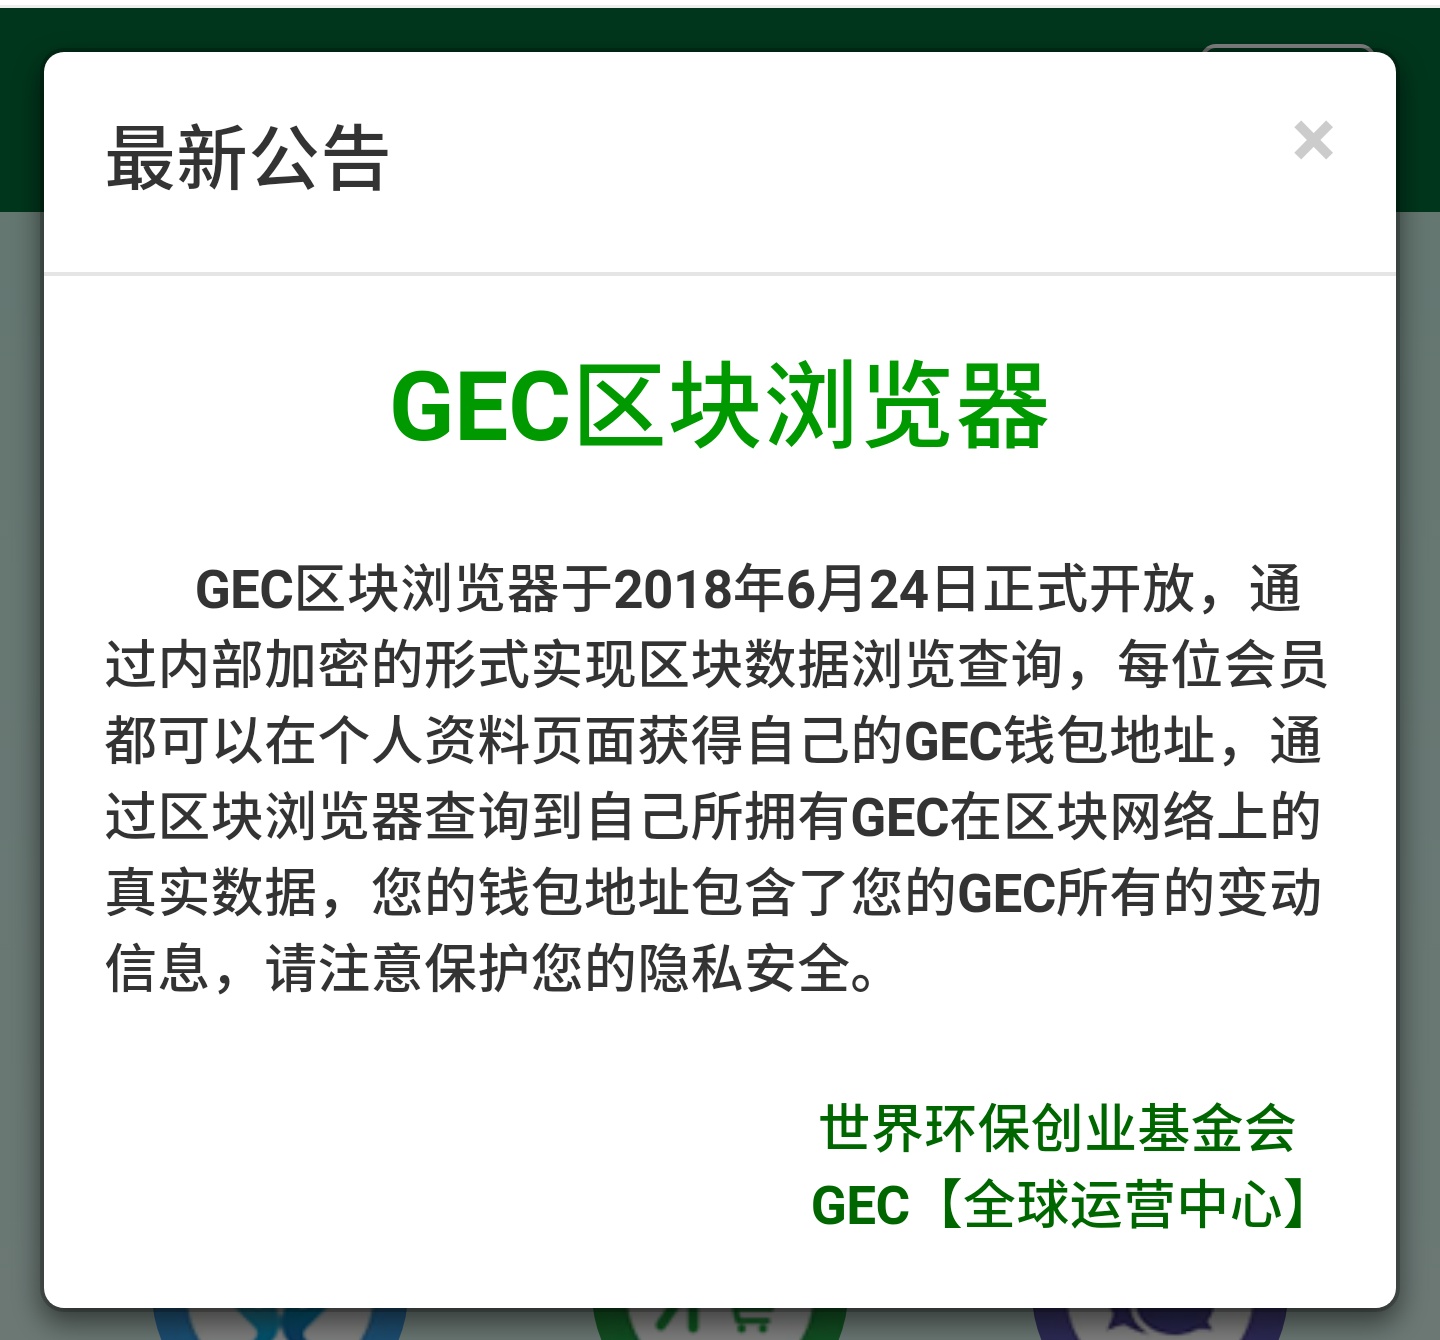 GEC|环保创业|环保创业币|世界环保创业基金会